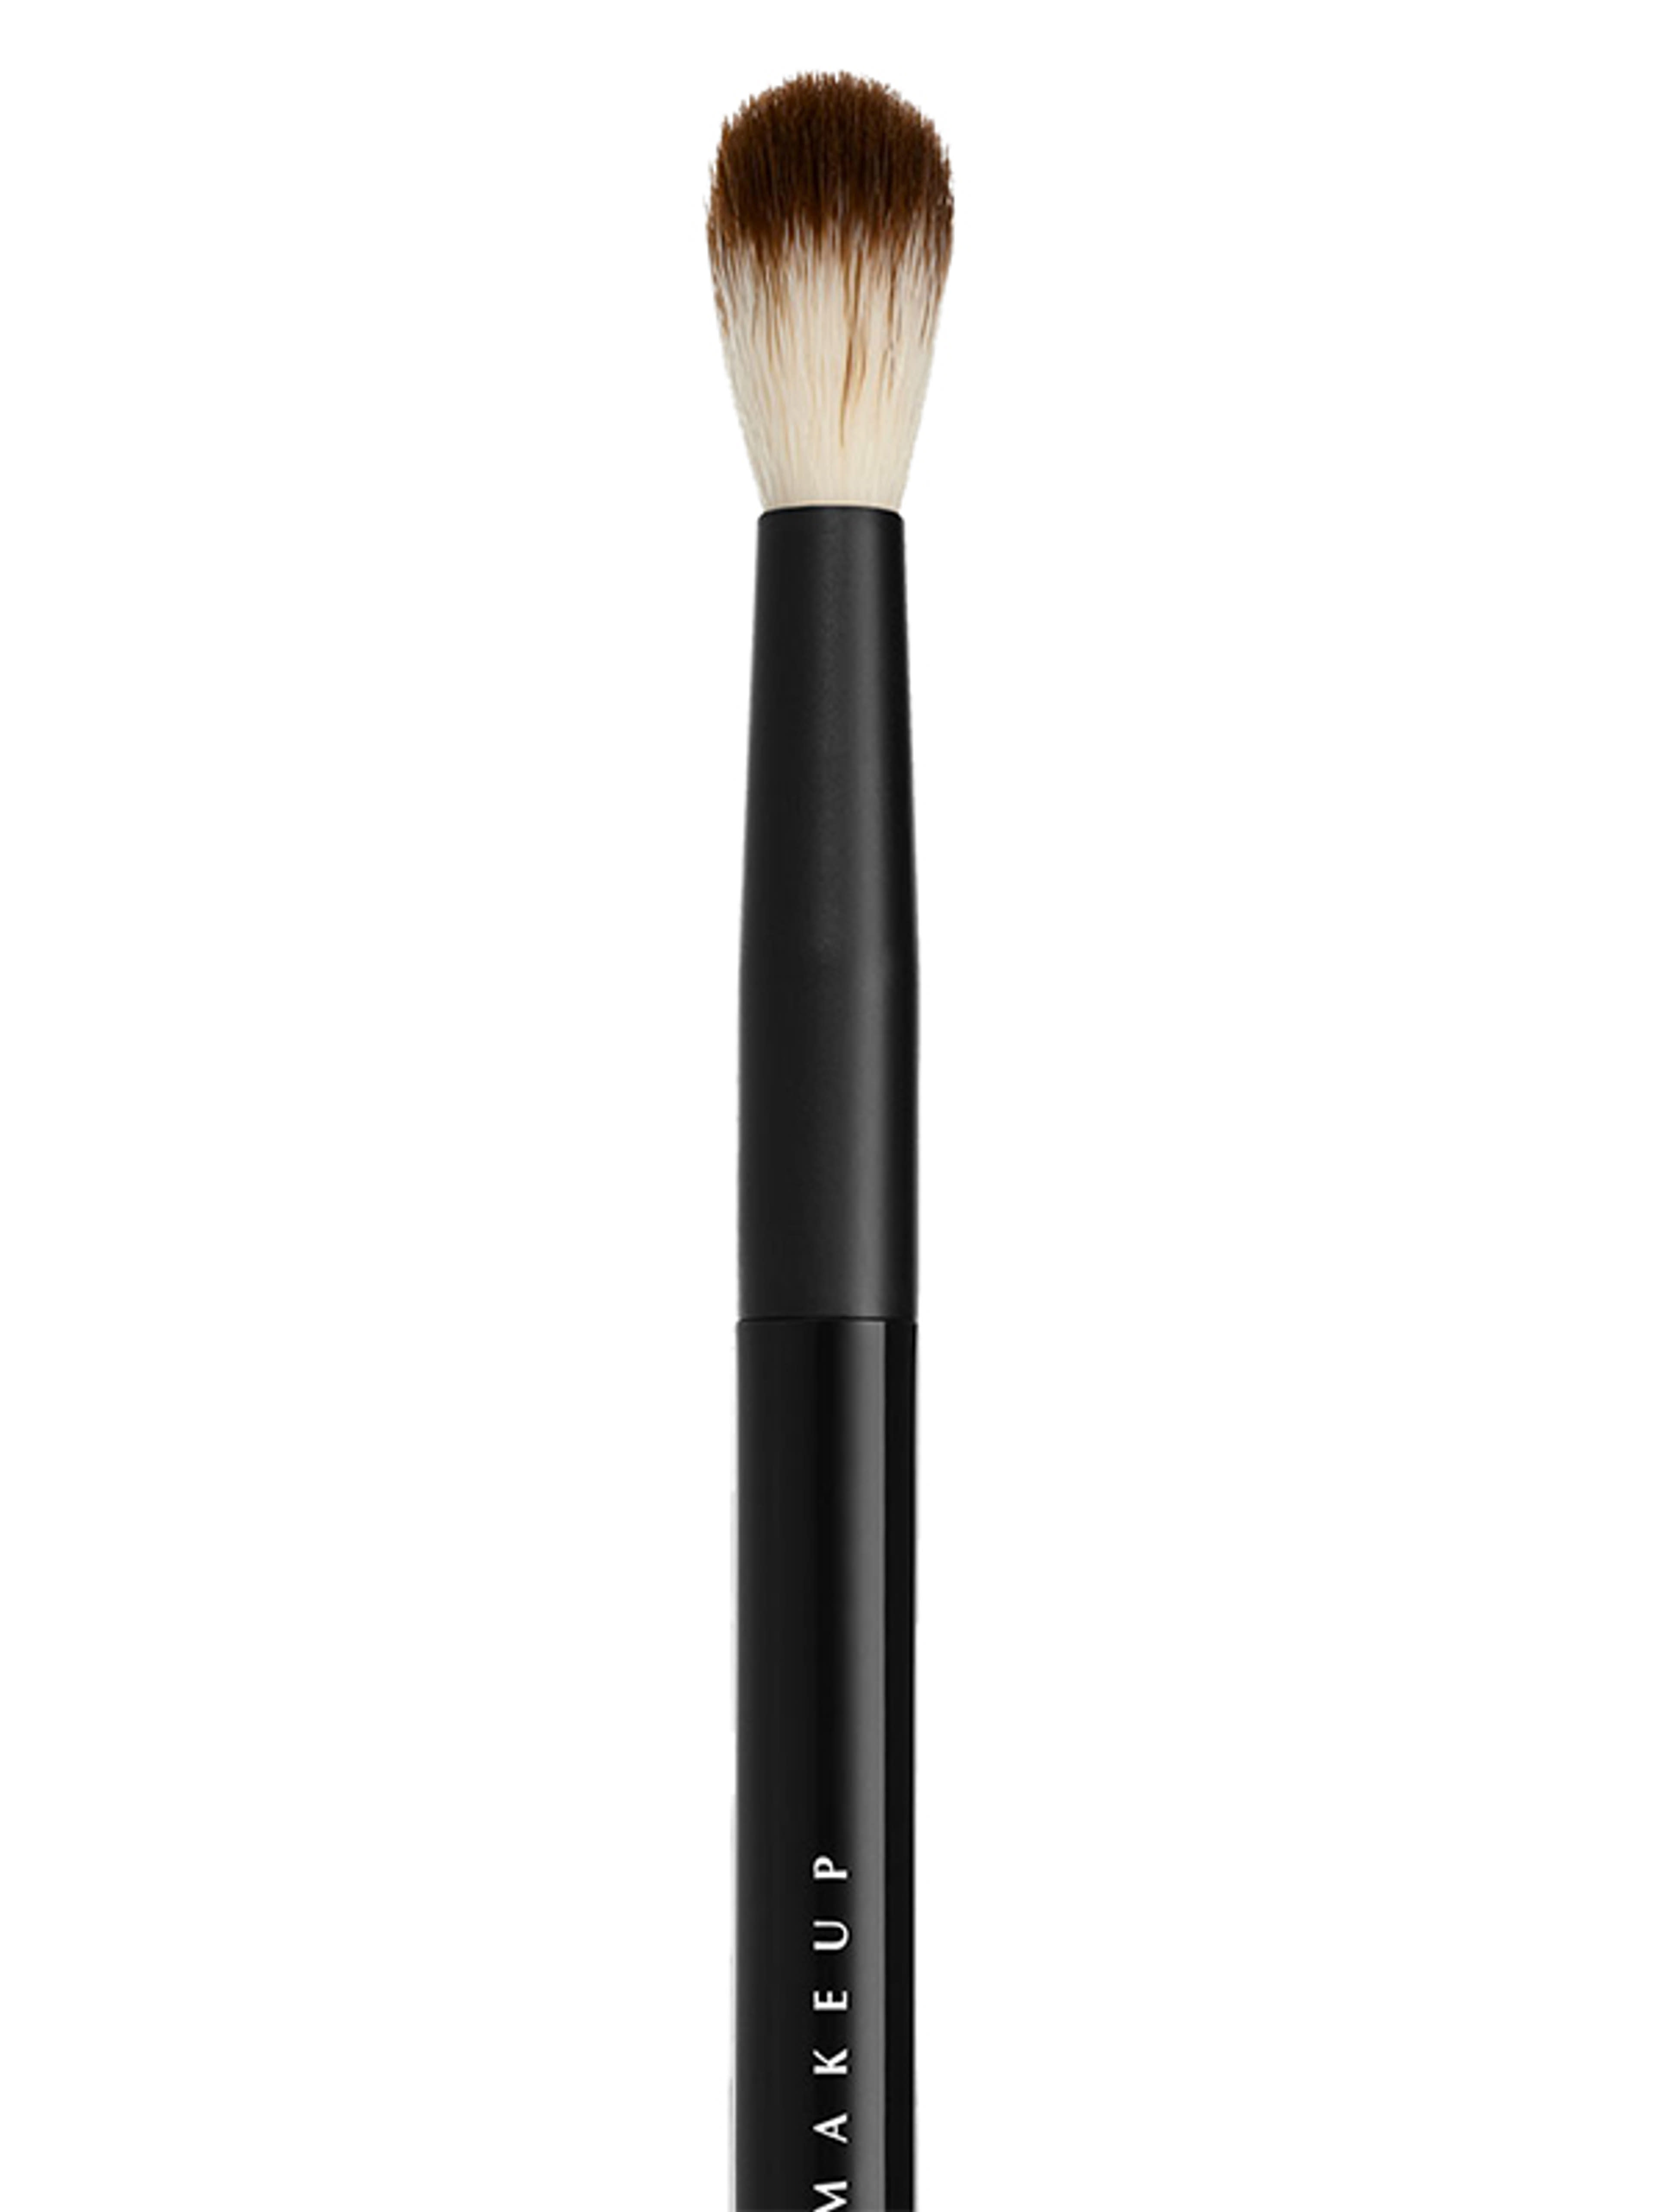 NYX Professional Makeup Pro Brush szemhéj ecset /Blending - 1 db-2